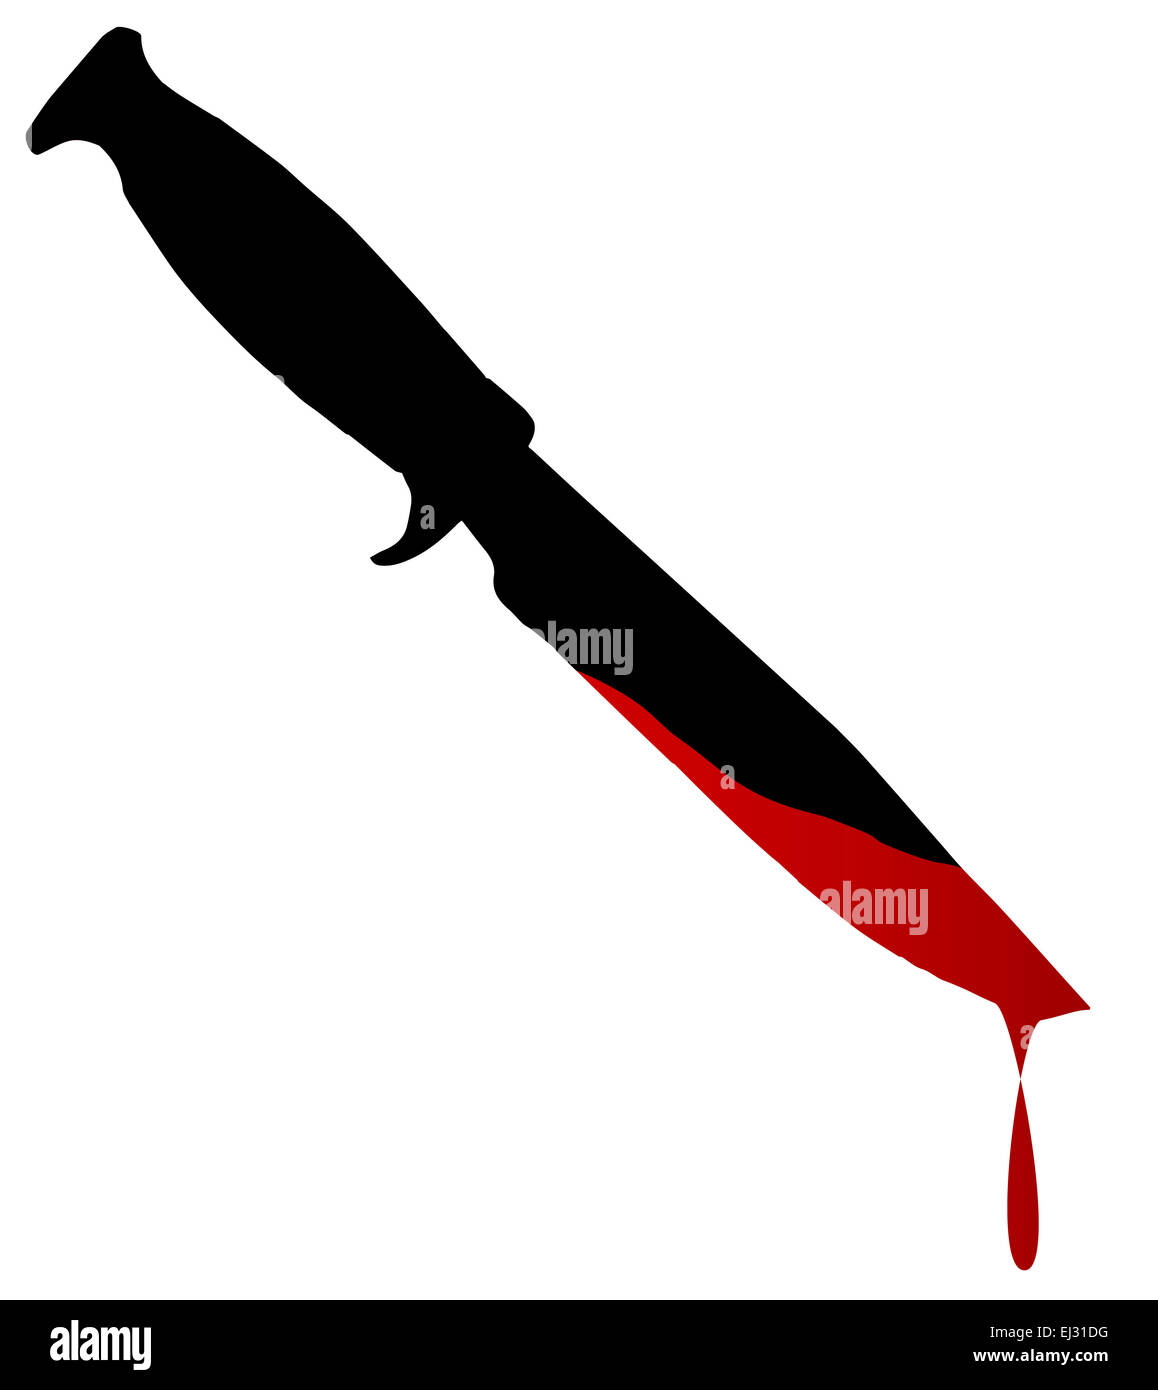 Silhouette d'un couteau Bowie avec du sang sur fond blanc Banque D'Images